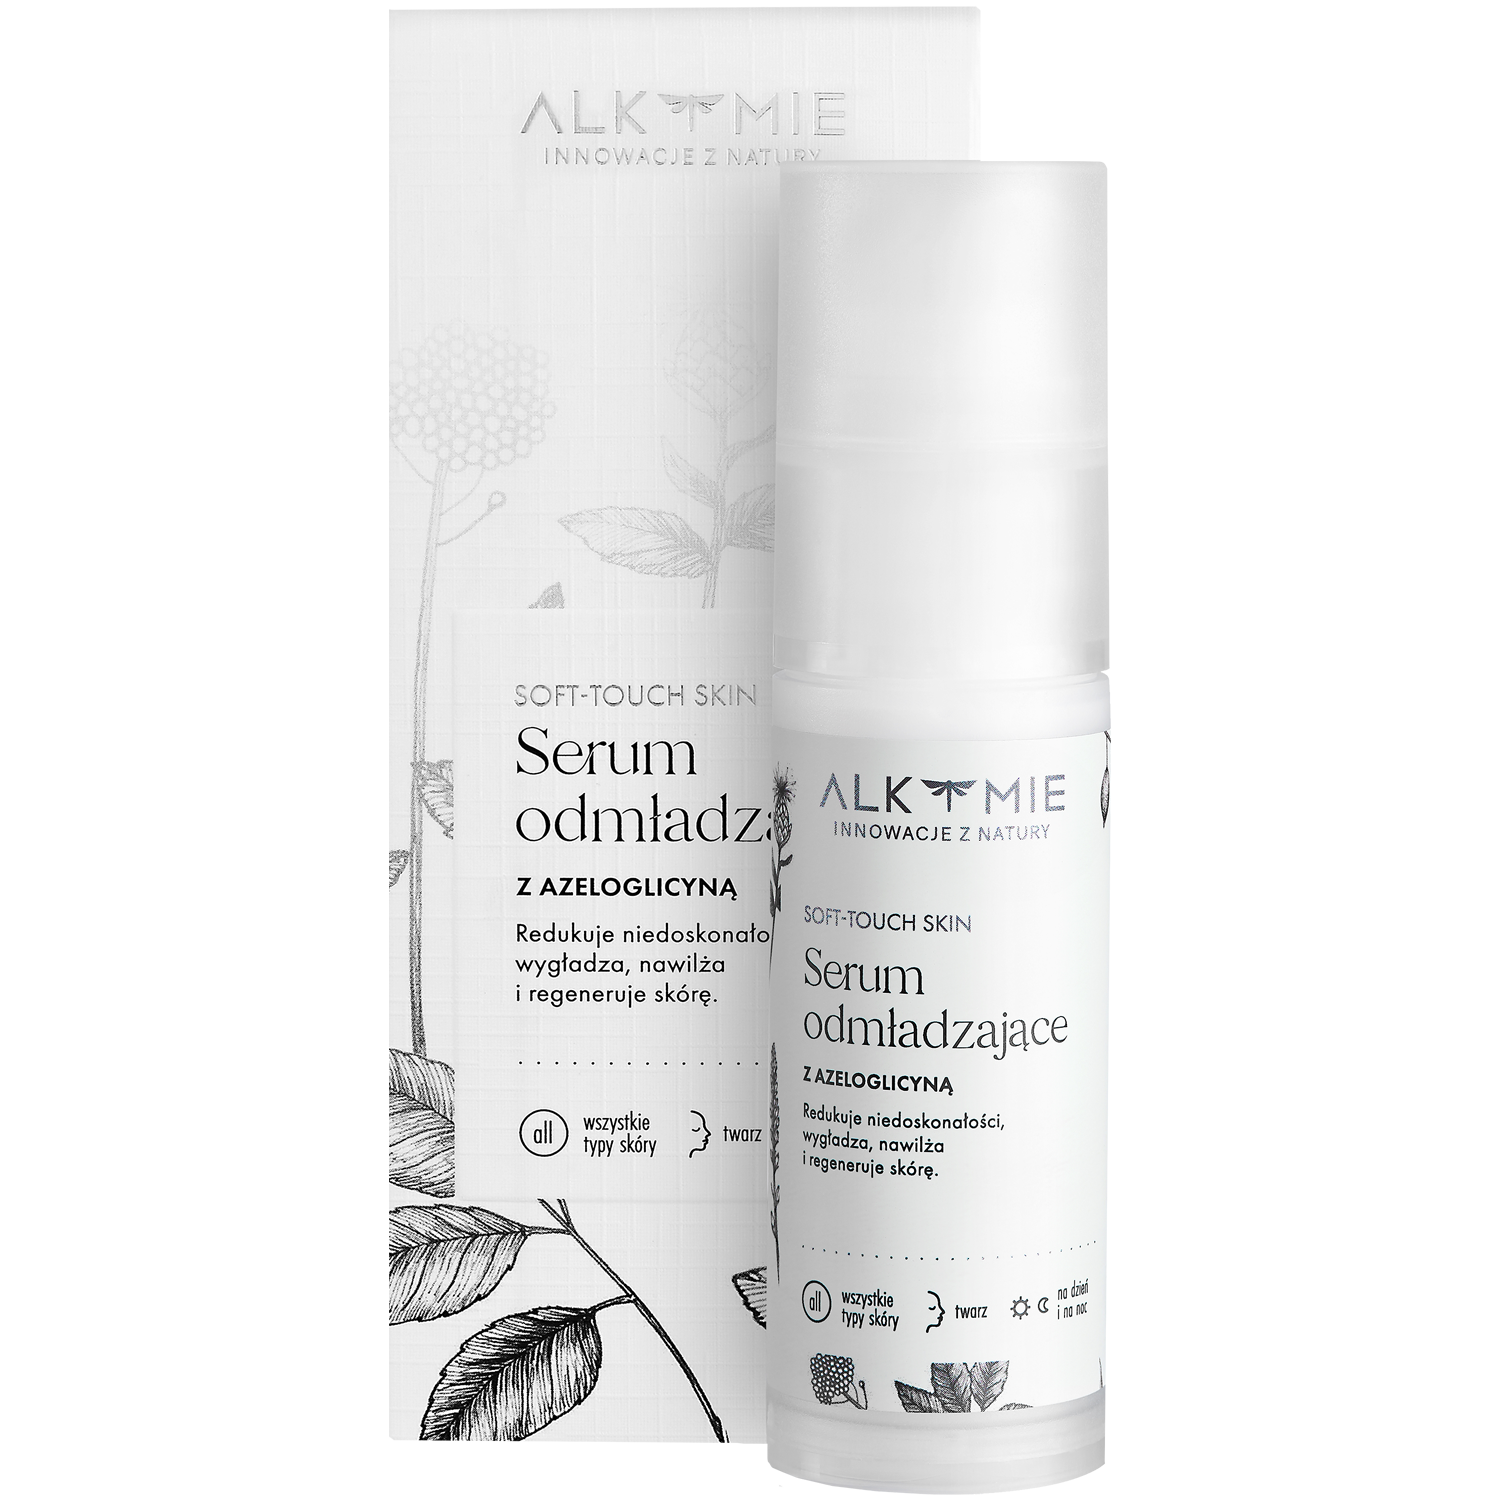 Alkmie Soft-touch Skin омолаживающая сыворотка для лица, 30 мл